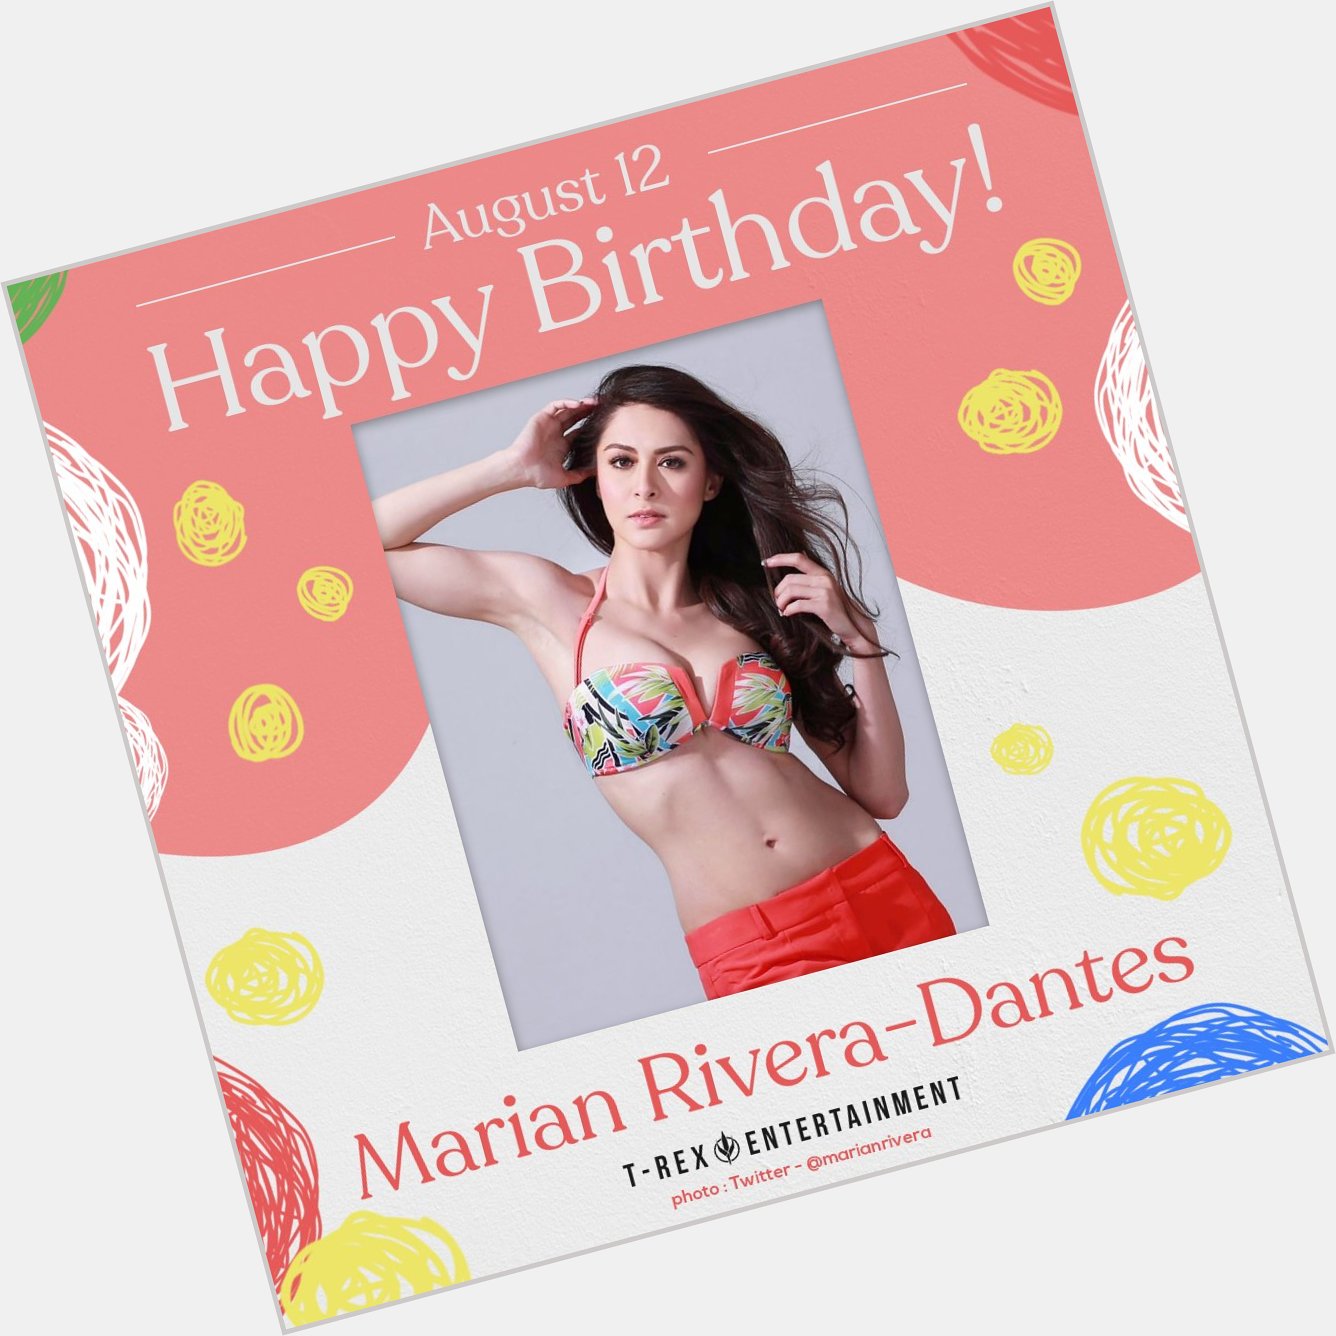 Happy birthday, Marian Rivera!  Trivia: Her full name is Marian Rivera Gracia-Dantes. She turns 36 today! 